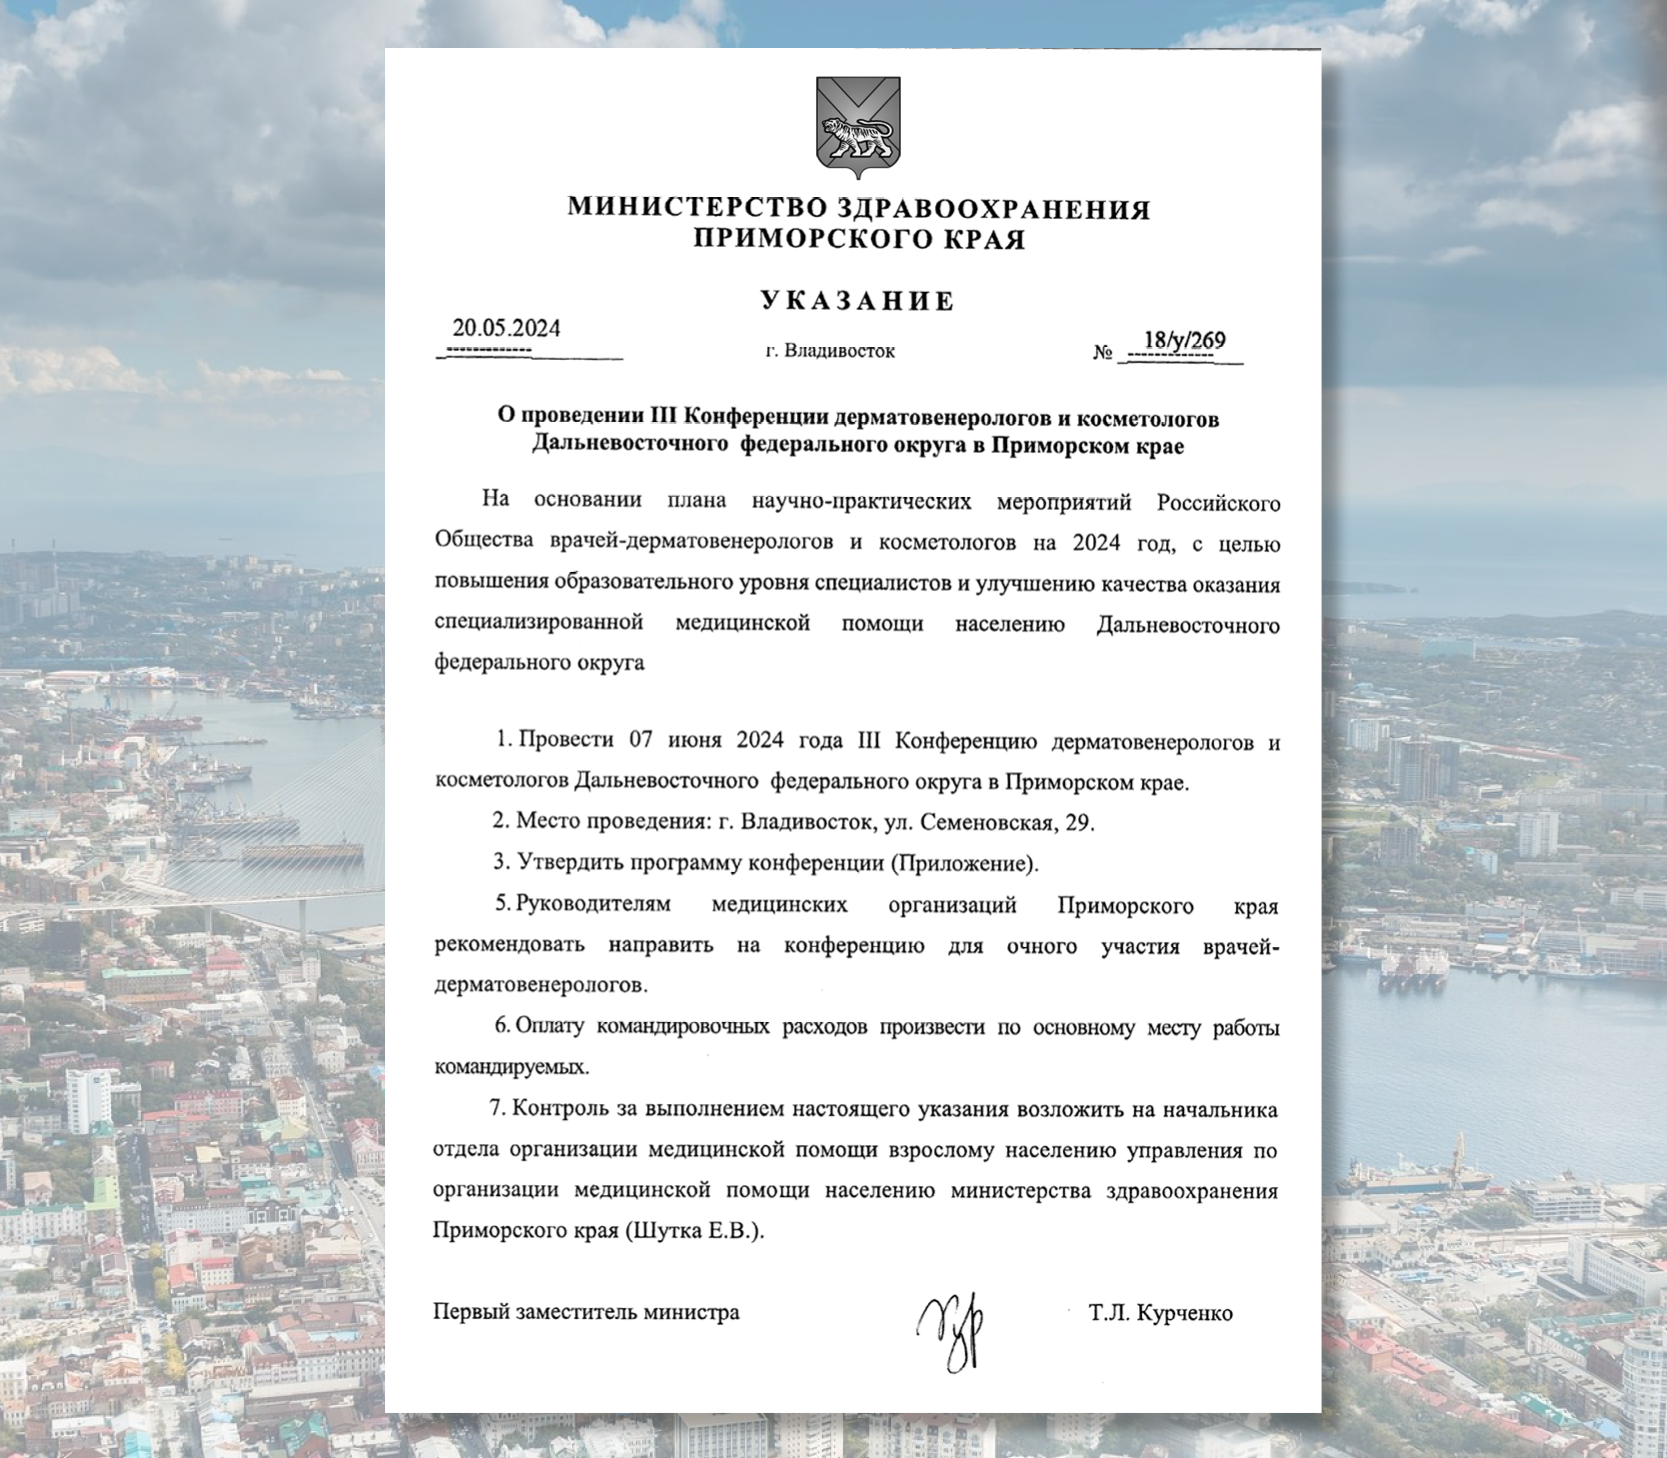 Министерством здравоохранения Приморского края издан указ о проведении III конференции дерматовенерологов и косметологов Дальневосточного федерального округа.